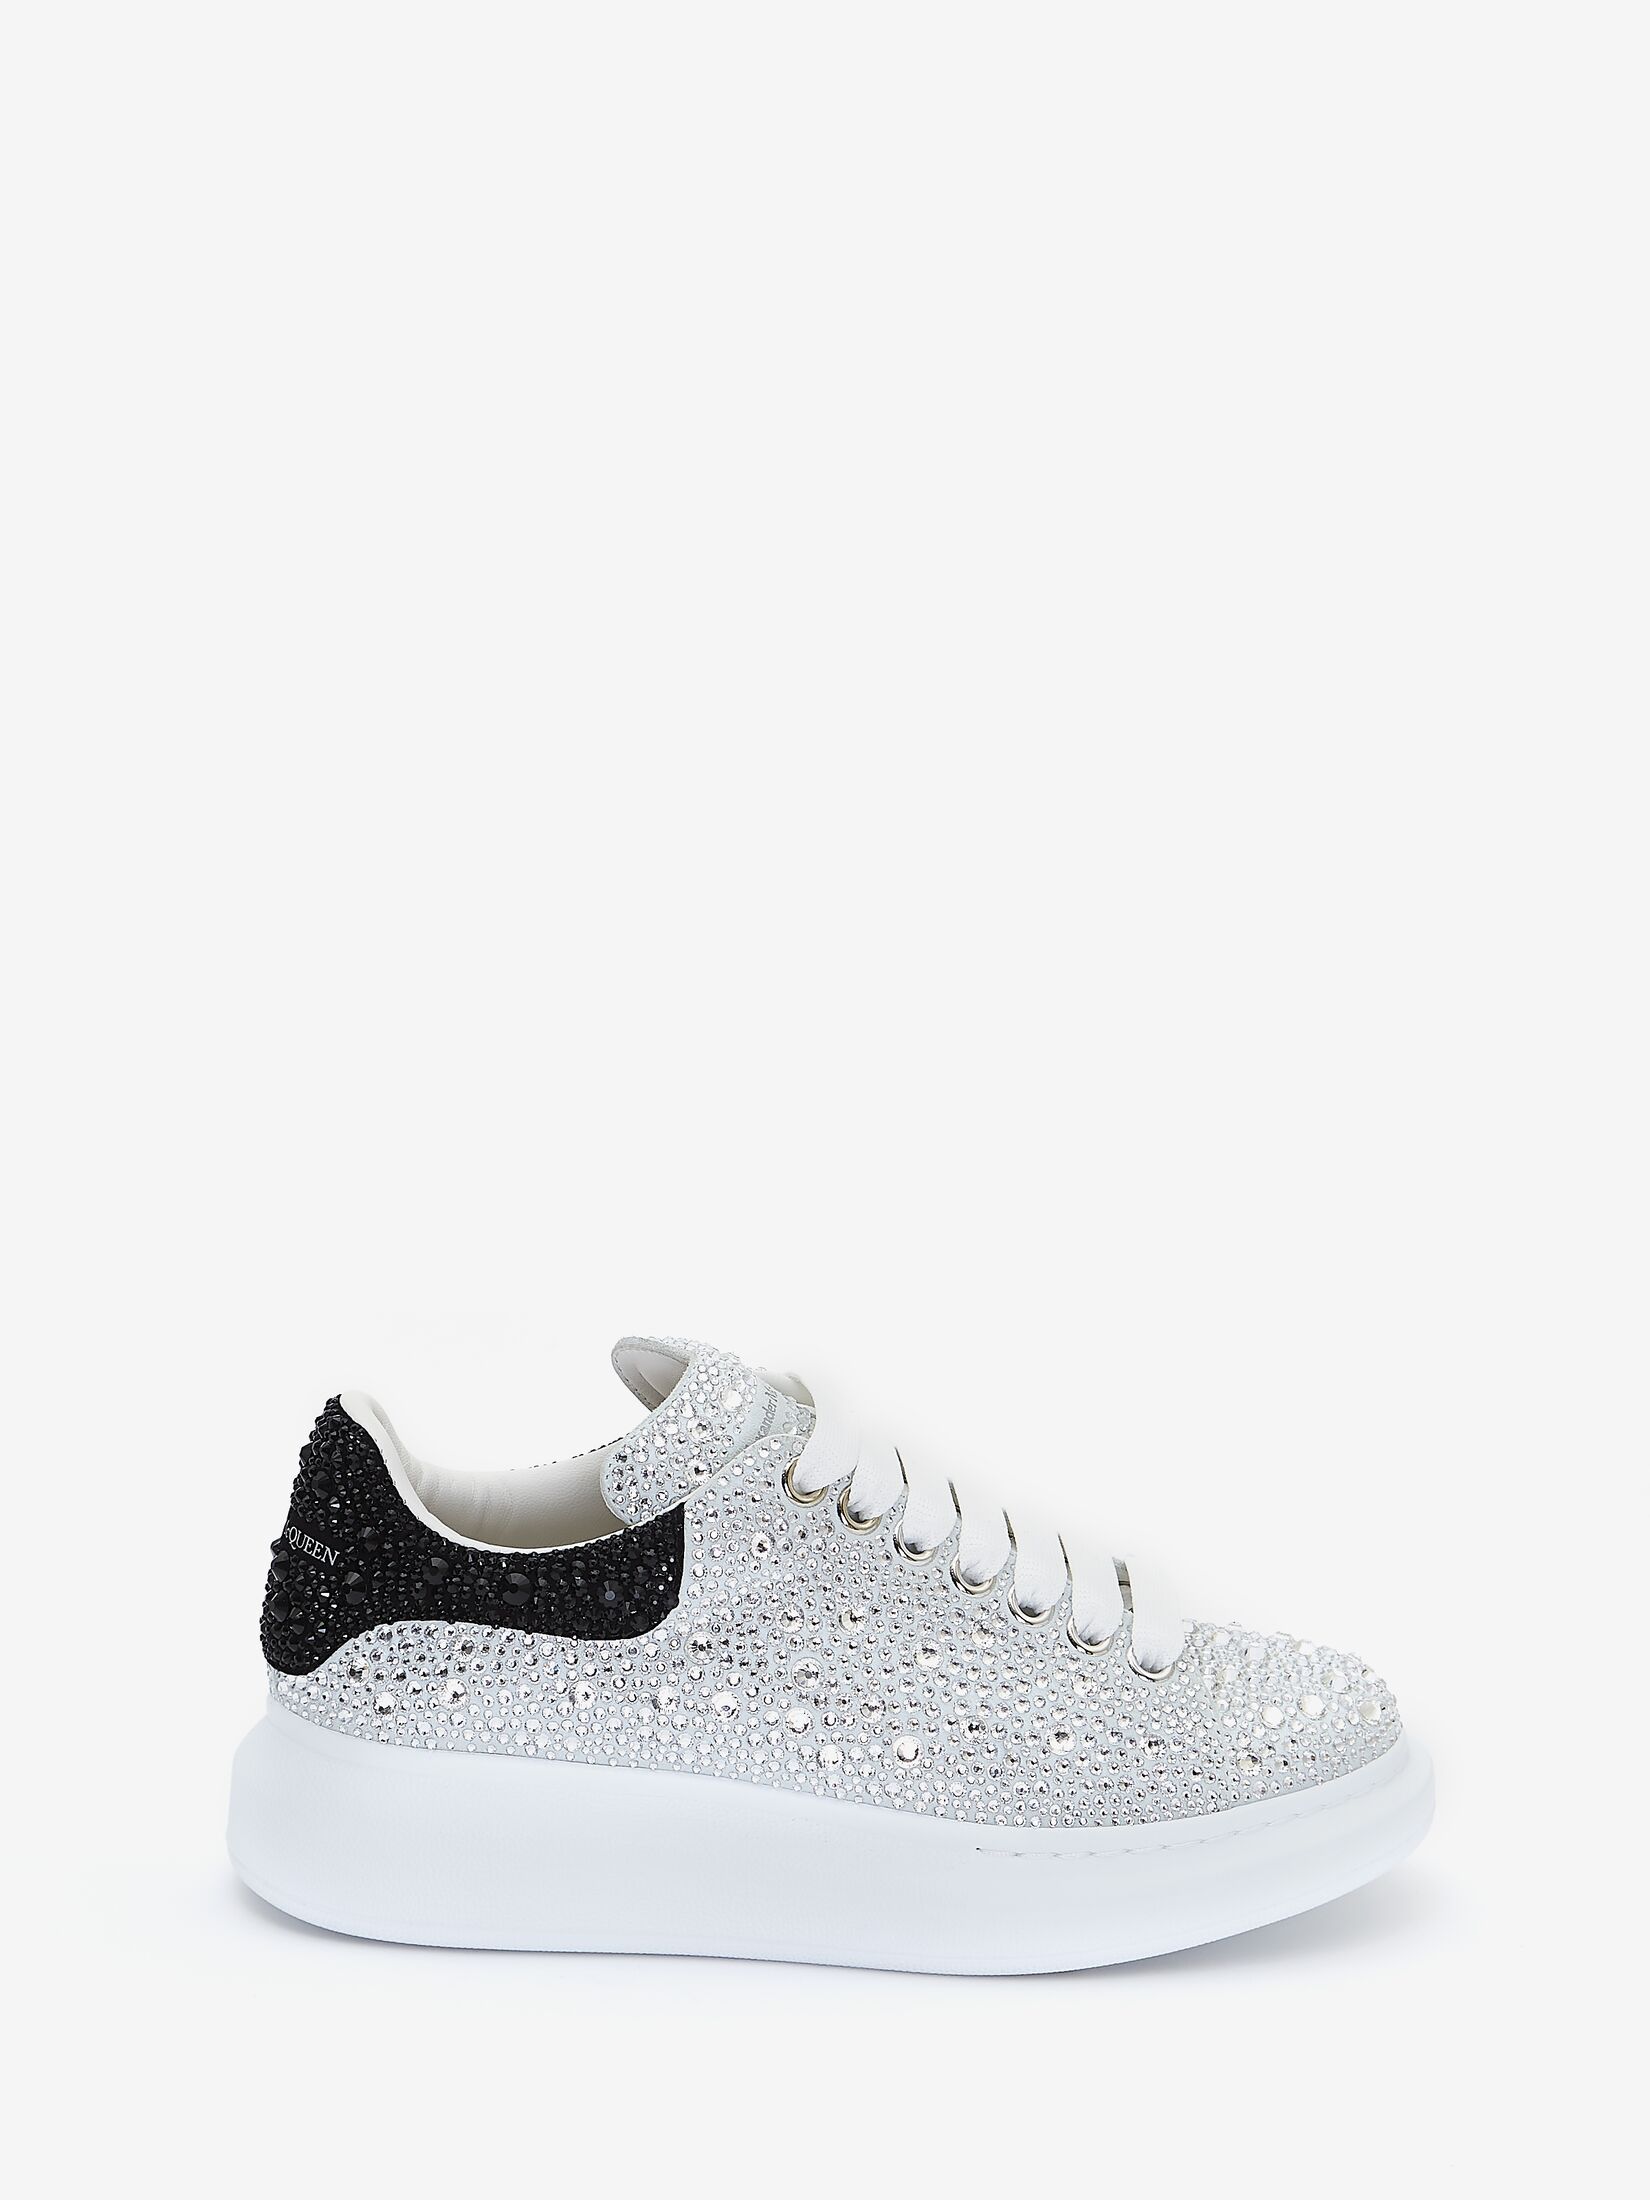 Crystal-embellished Oversized Sneaker in White/Black | Alexander 